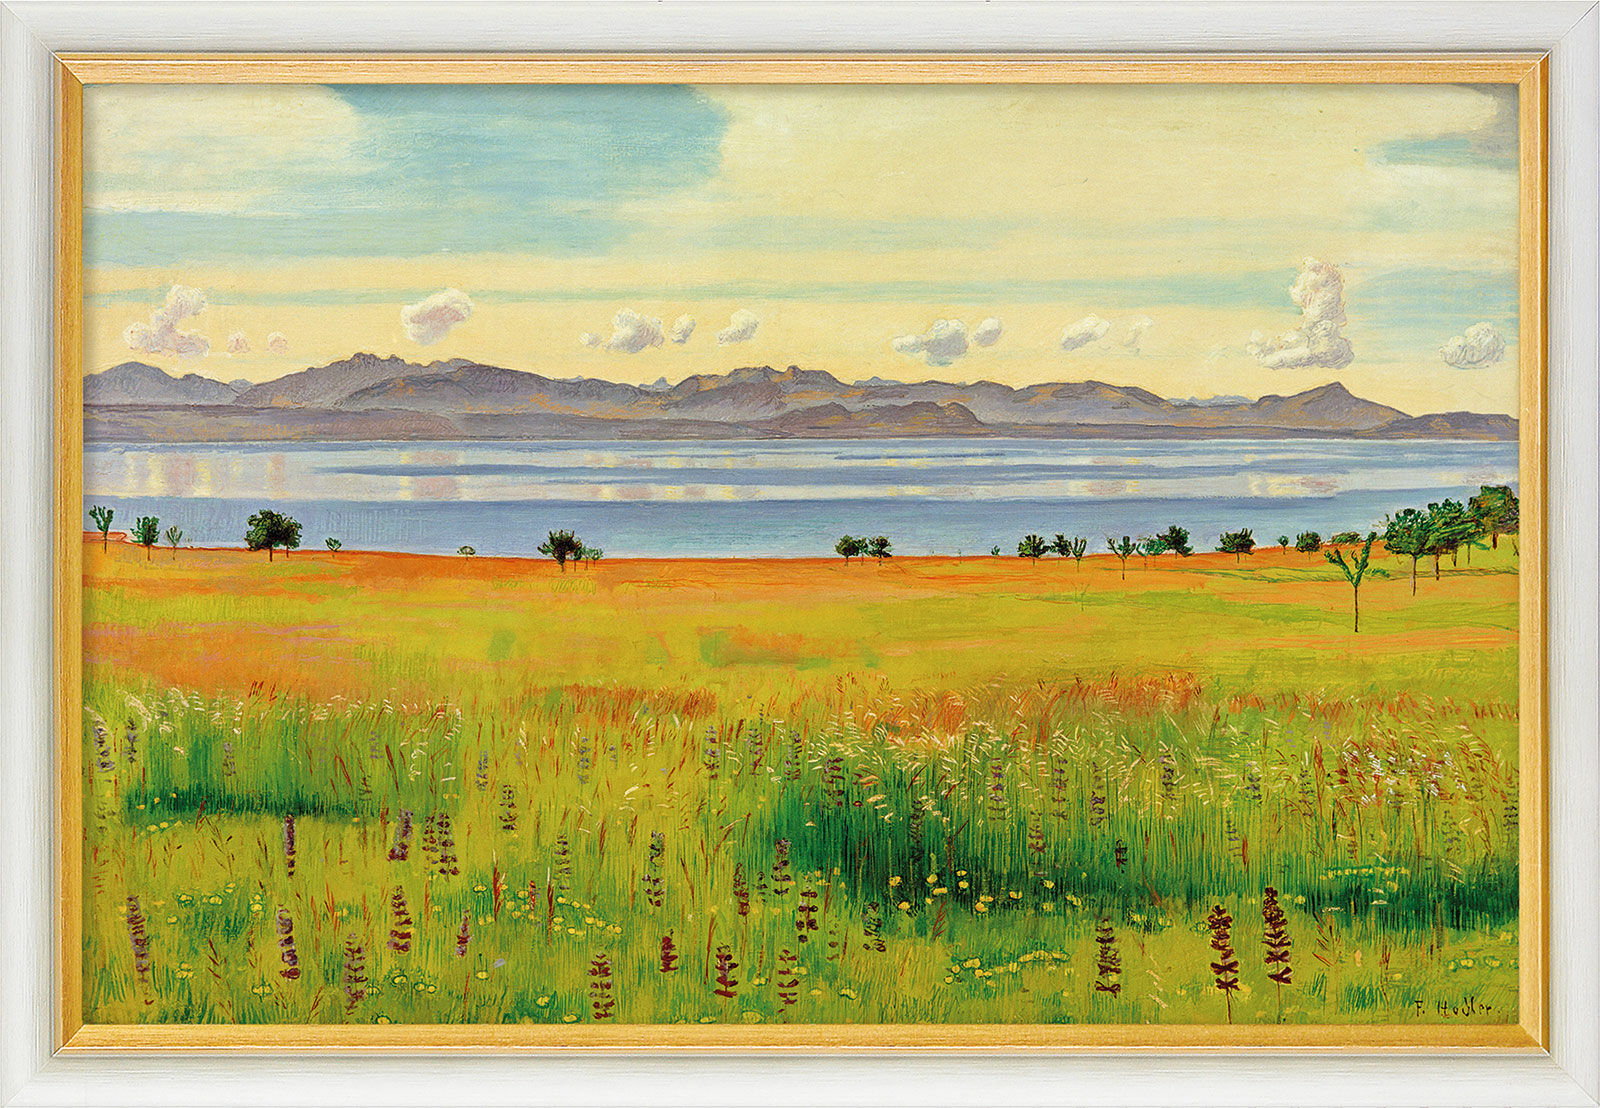 Billede "Genevesøen fra Saint-Prex" (1901), indrammet von Ferdinand Hodler